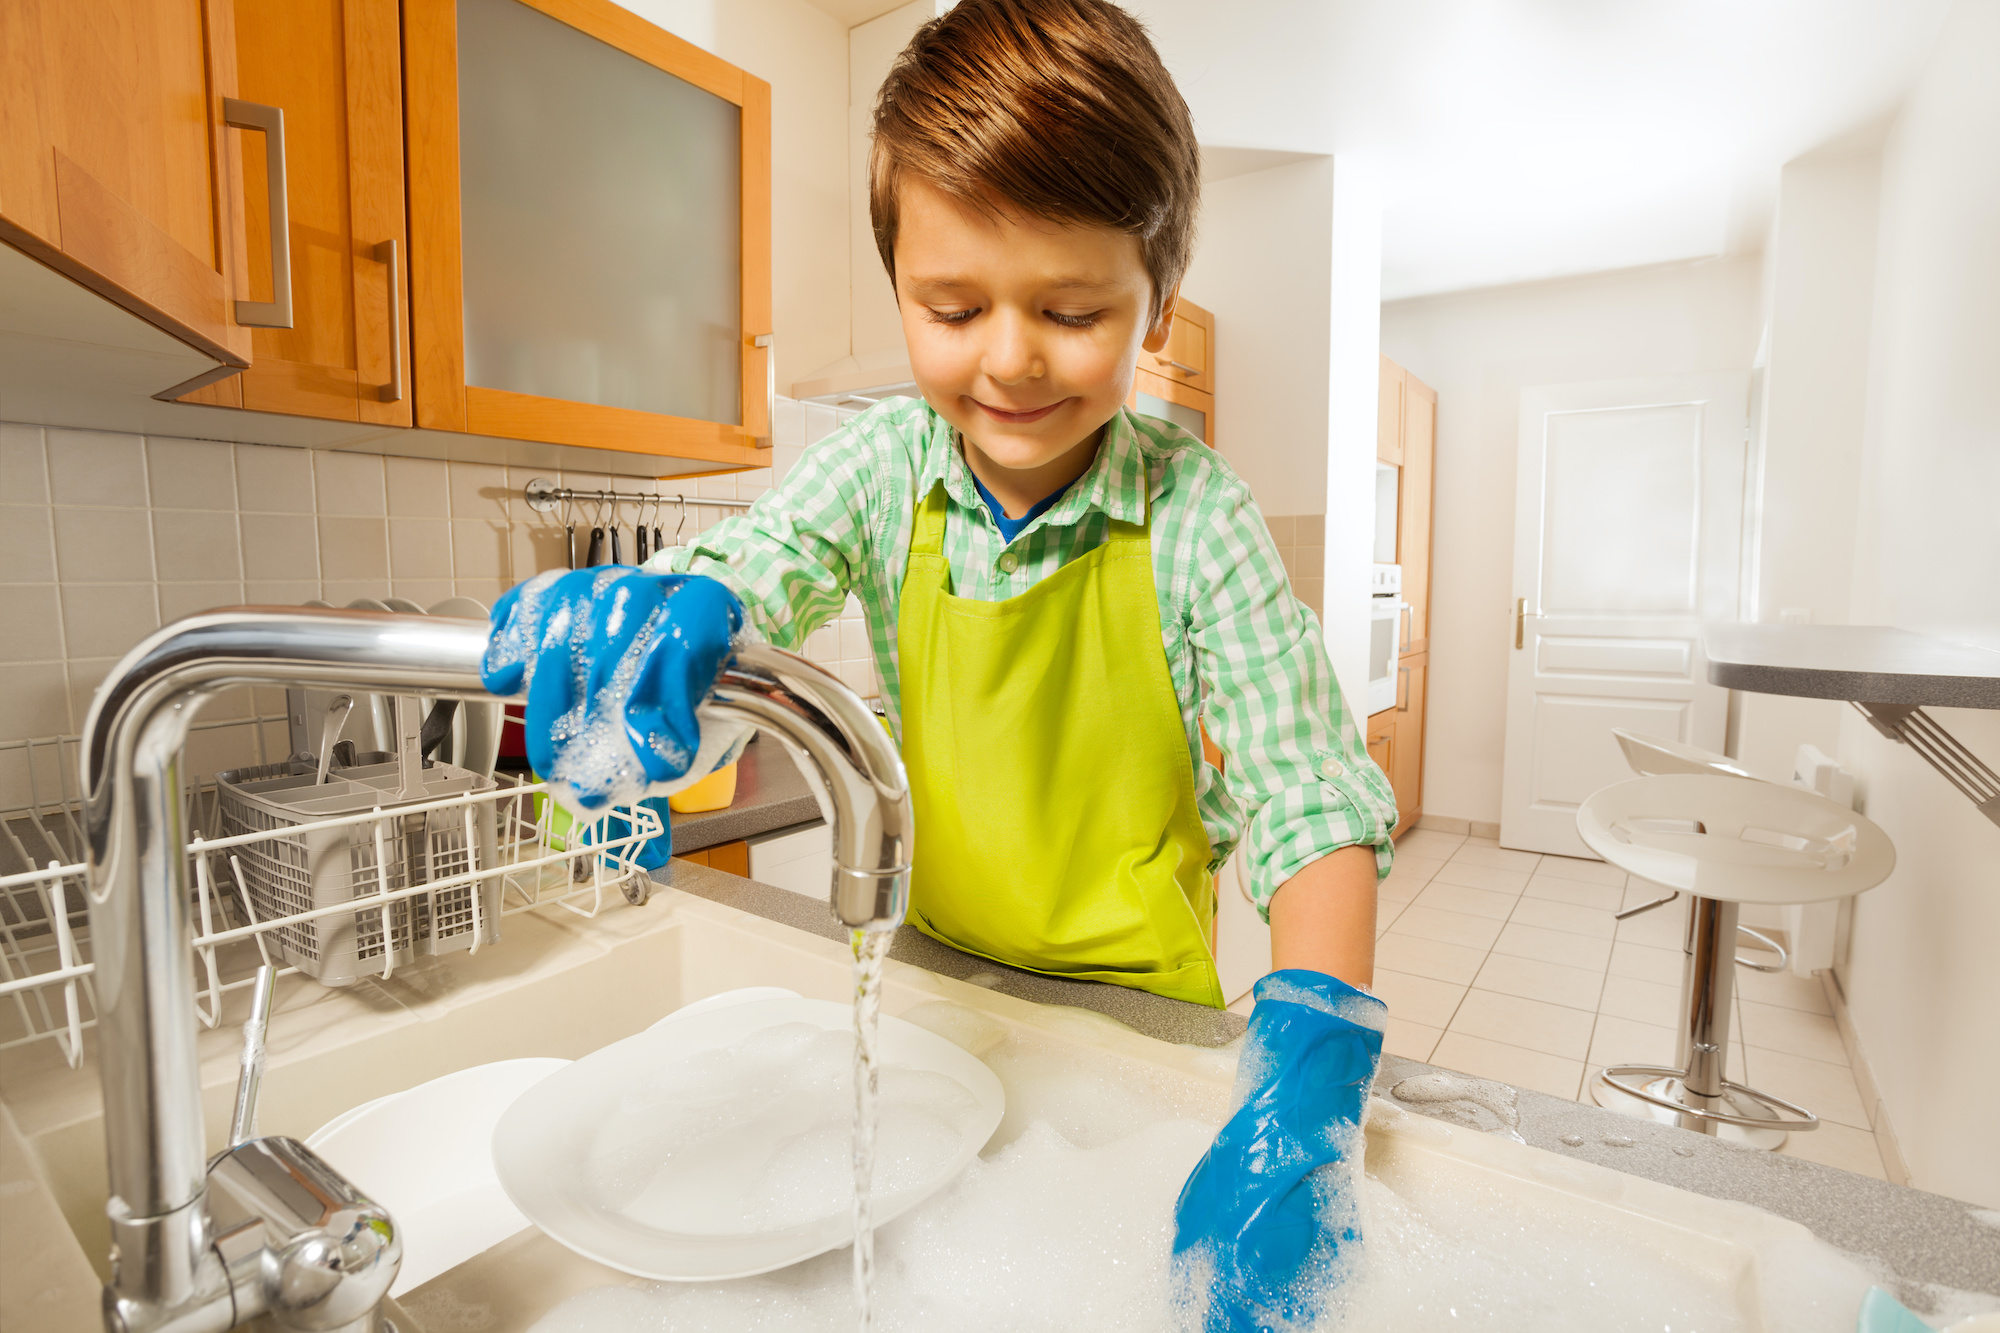 Ребенок помогает по дому. Полоскание посуды. Мальчик моет обувь.